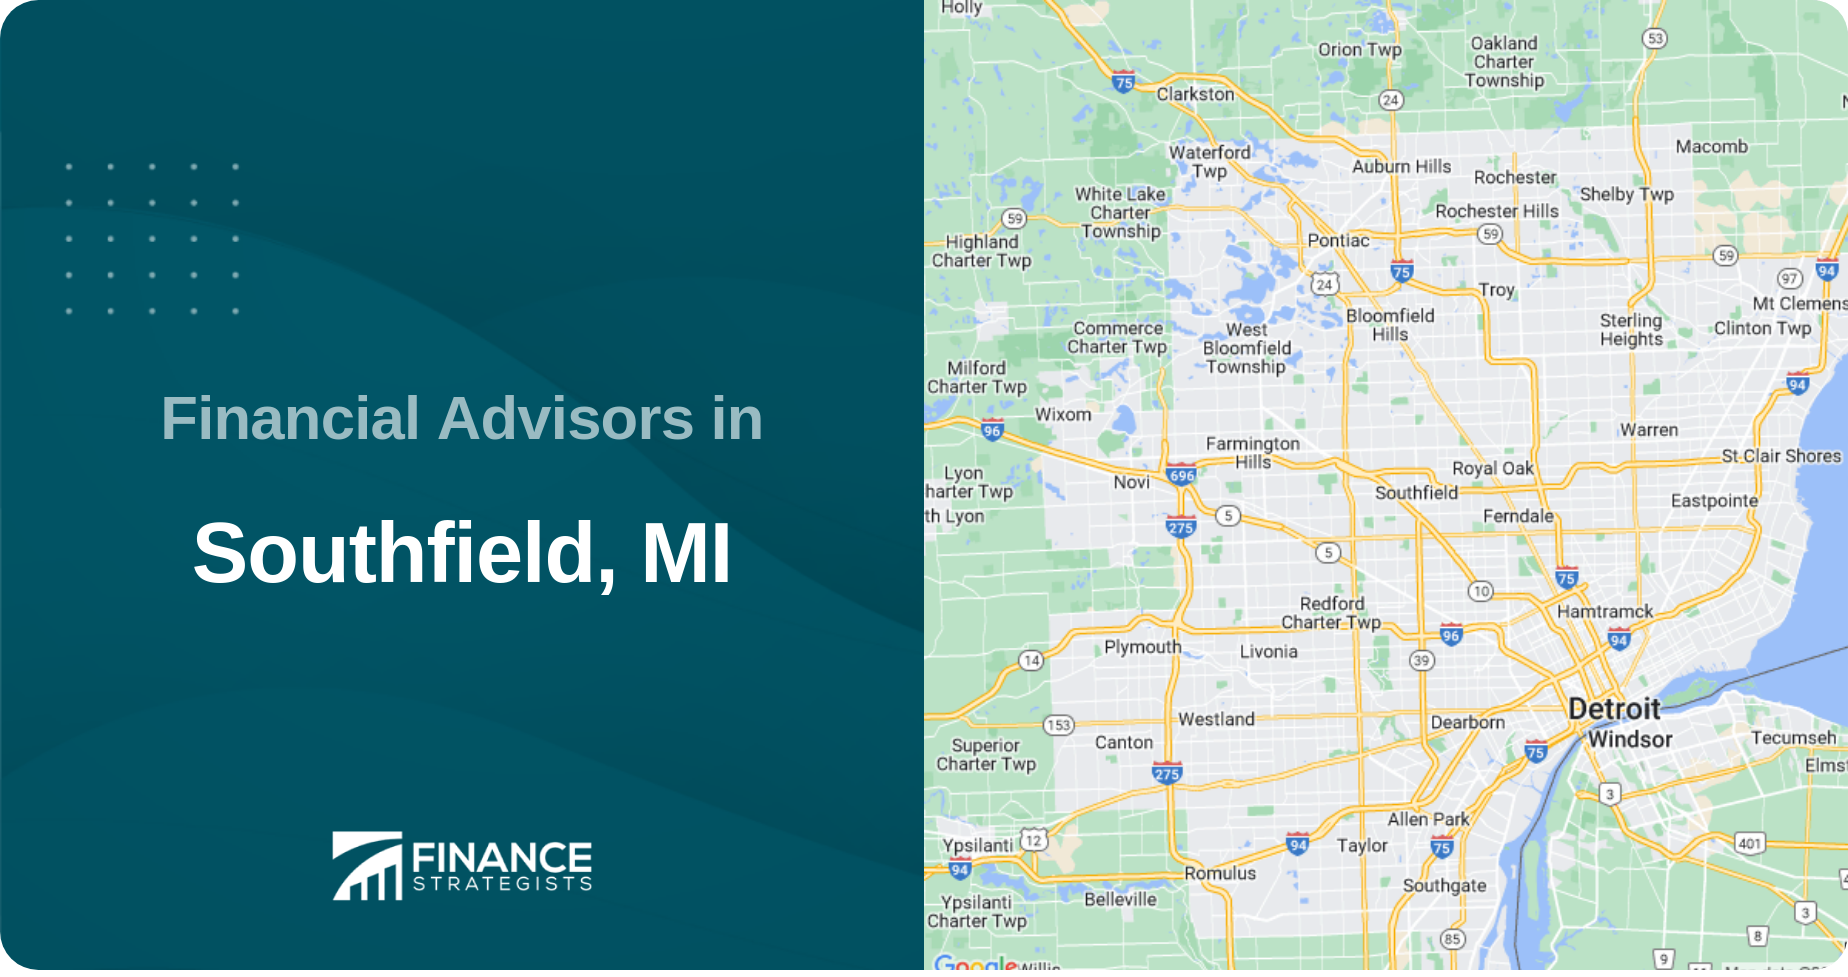 Financial Advisors in Southfield, MI